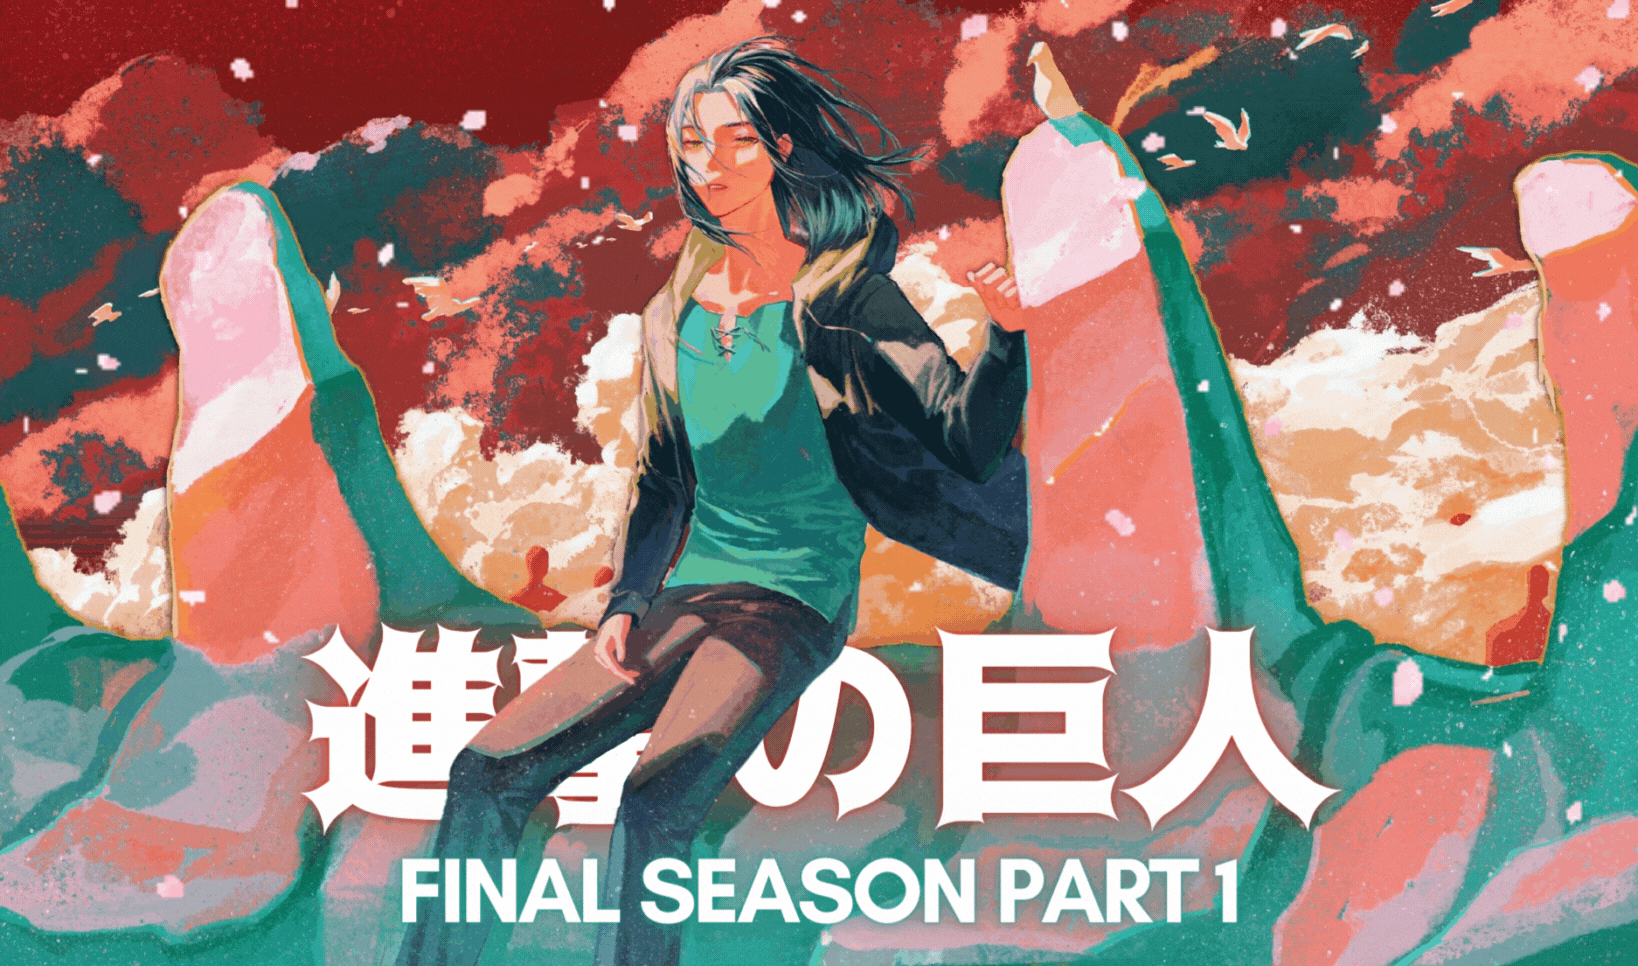 Shingeki no Kyojin - Attack on Titan - The Final Season Part 1